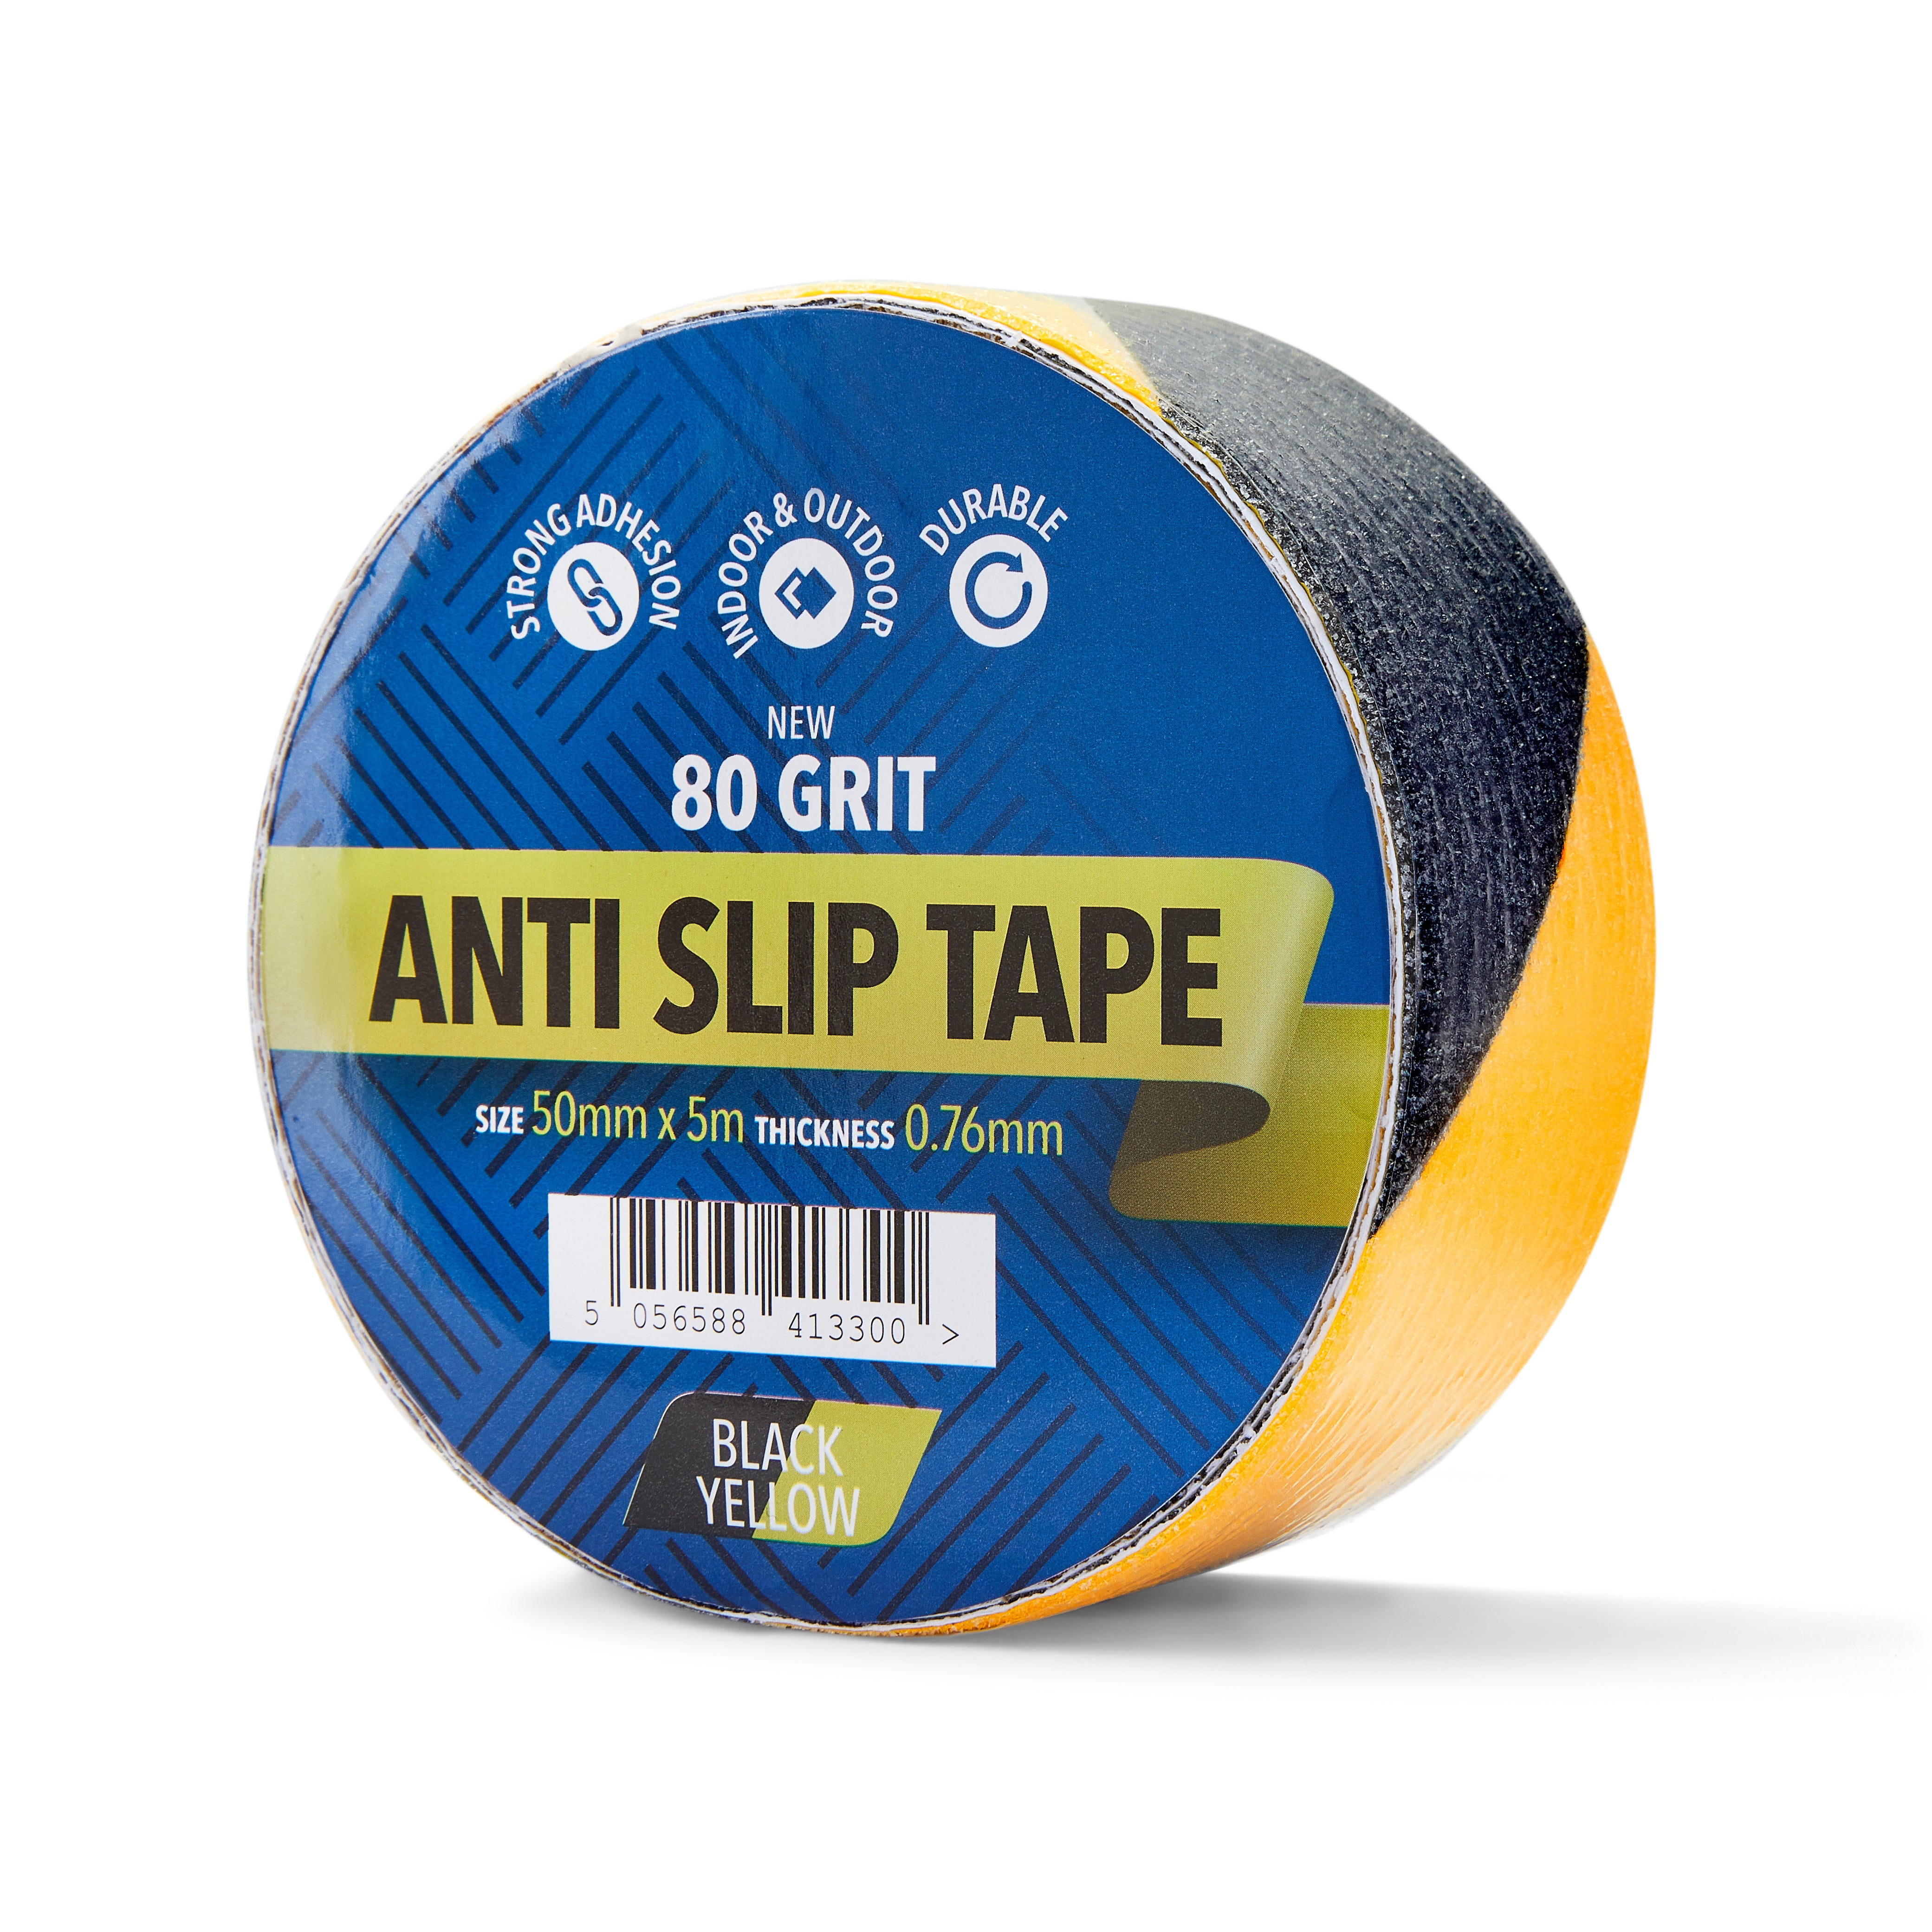 50mm x 5m Black & Yellow Anti Slip Tape - 1 Roll